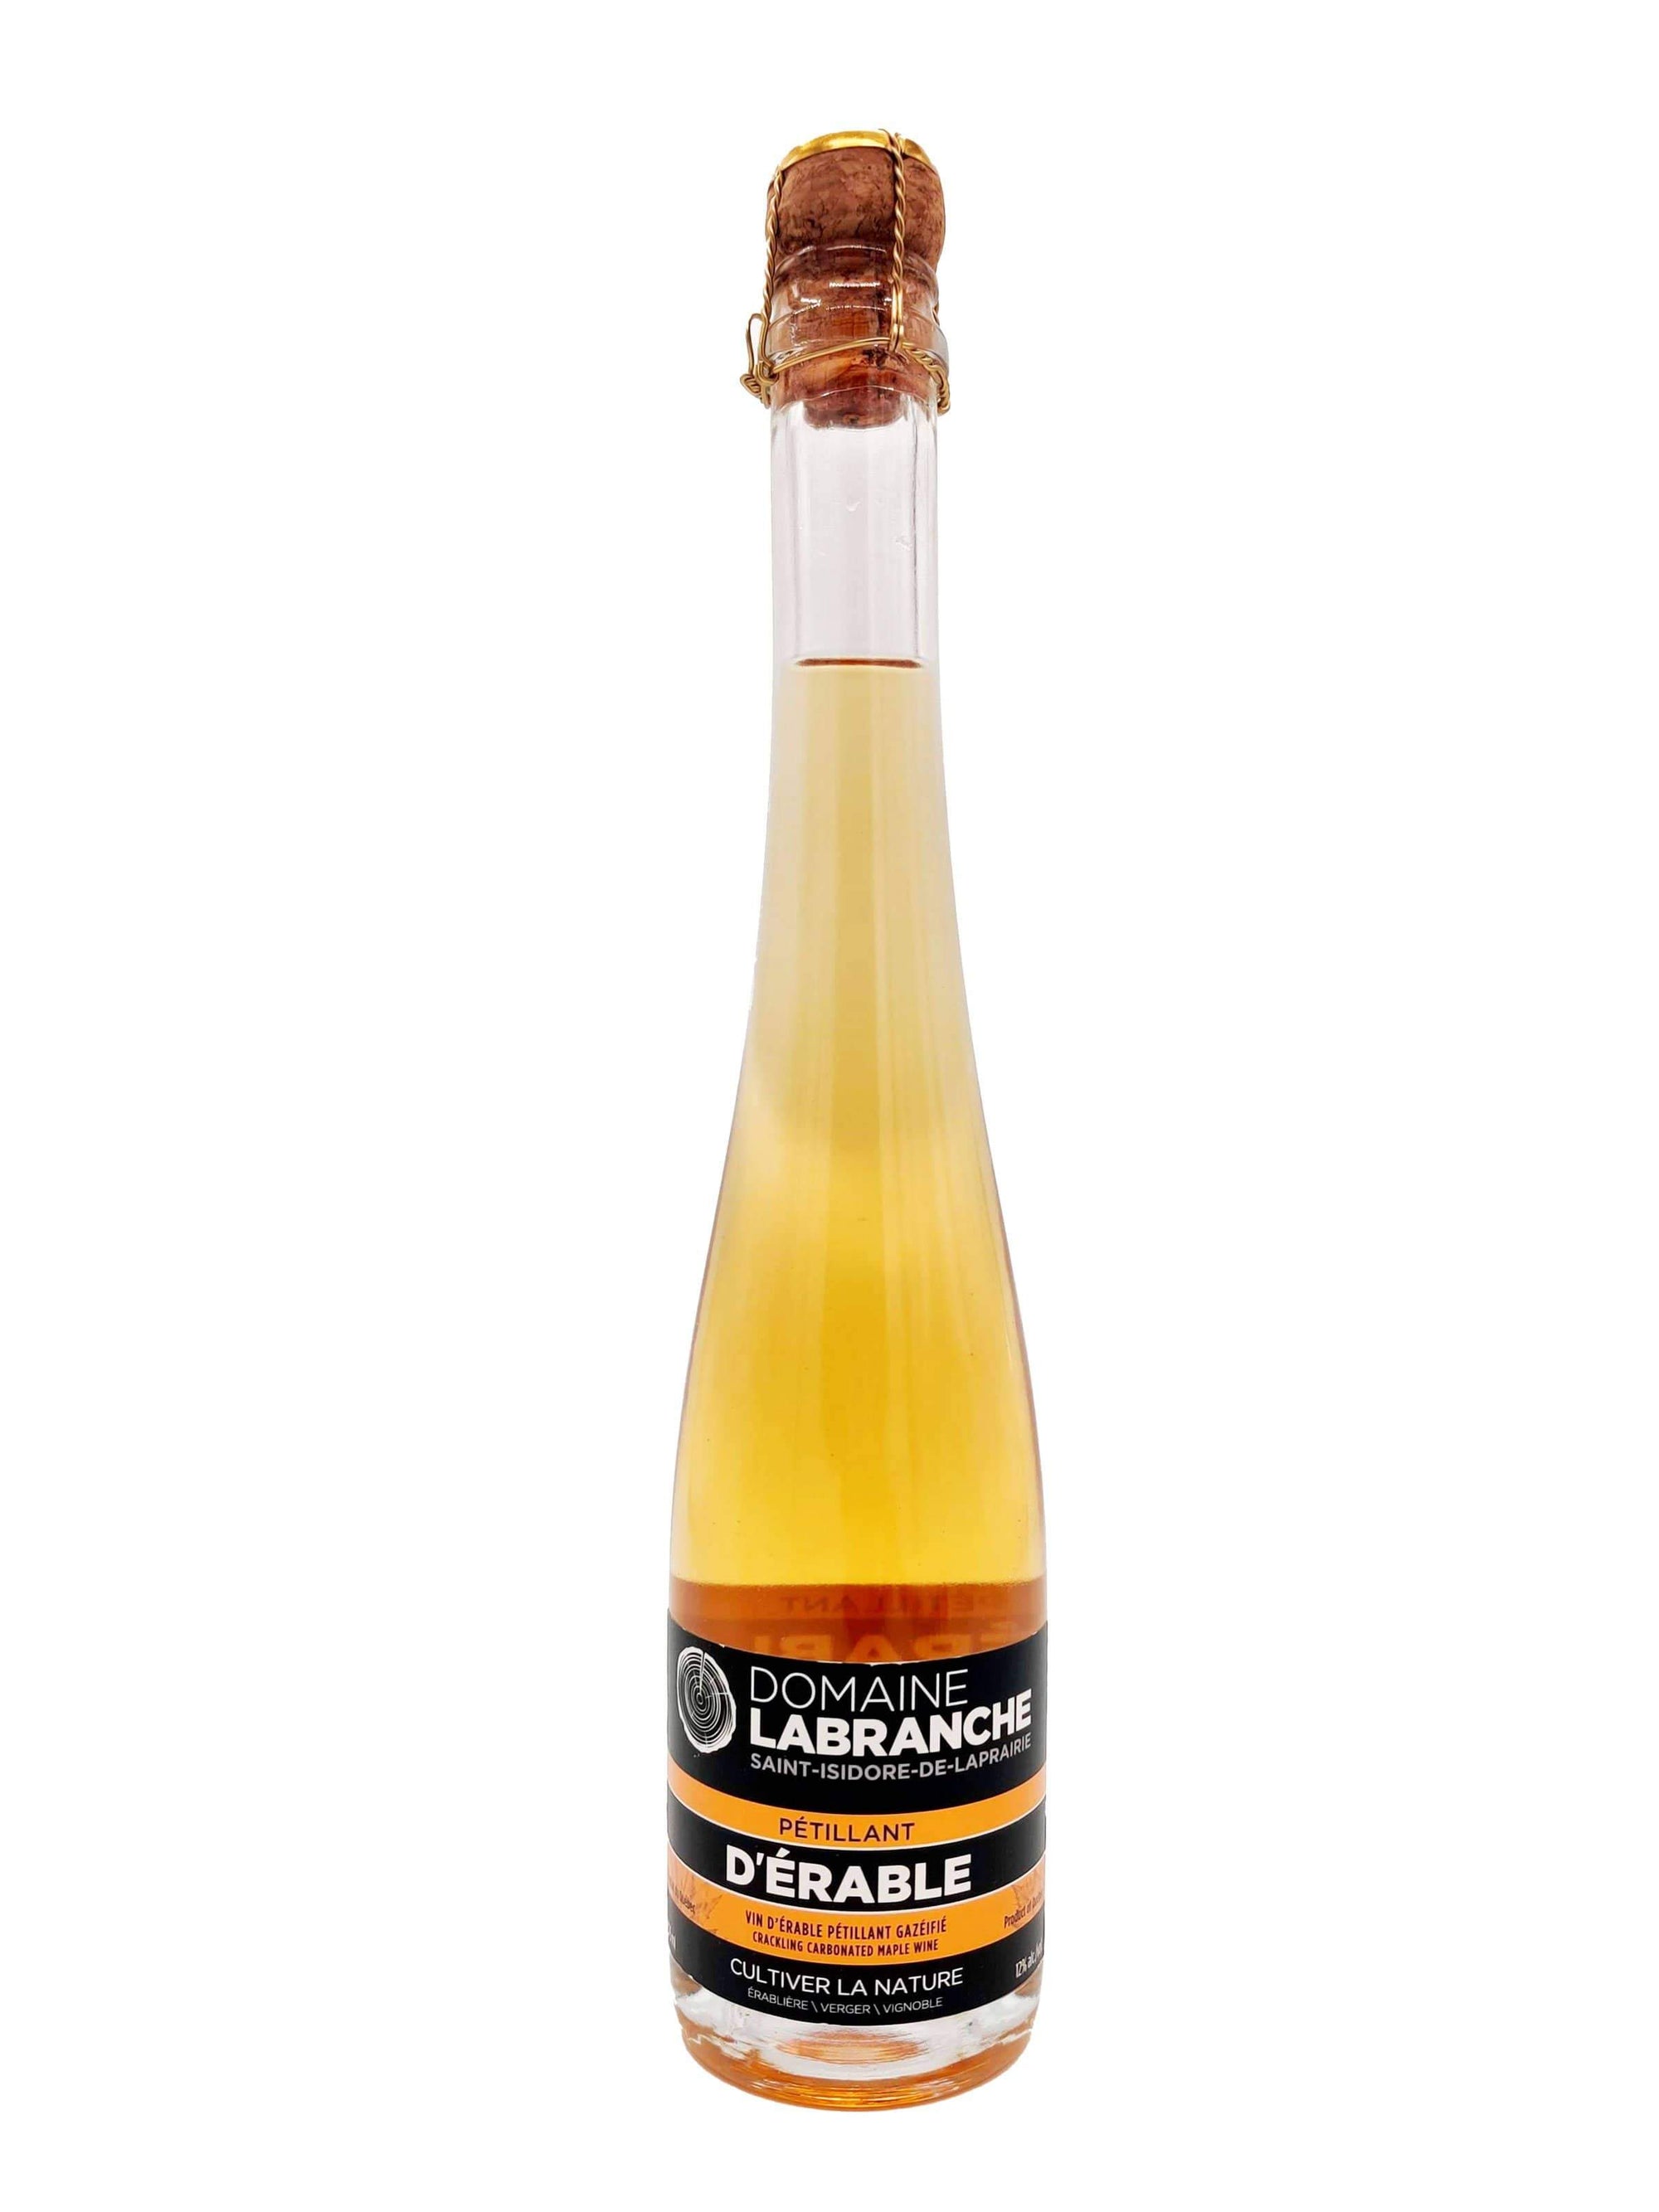 Pétillant d'érable (375ml) - Vin mousseux du Domaine Labranche